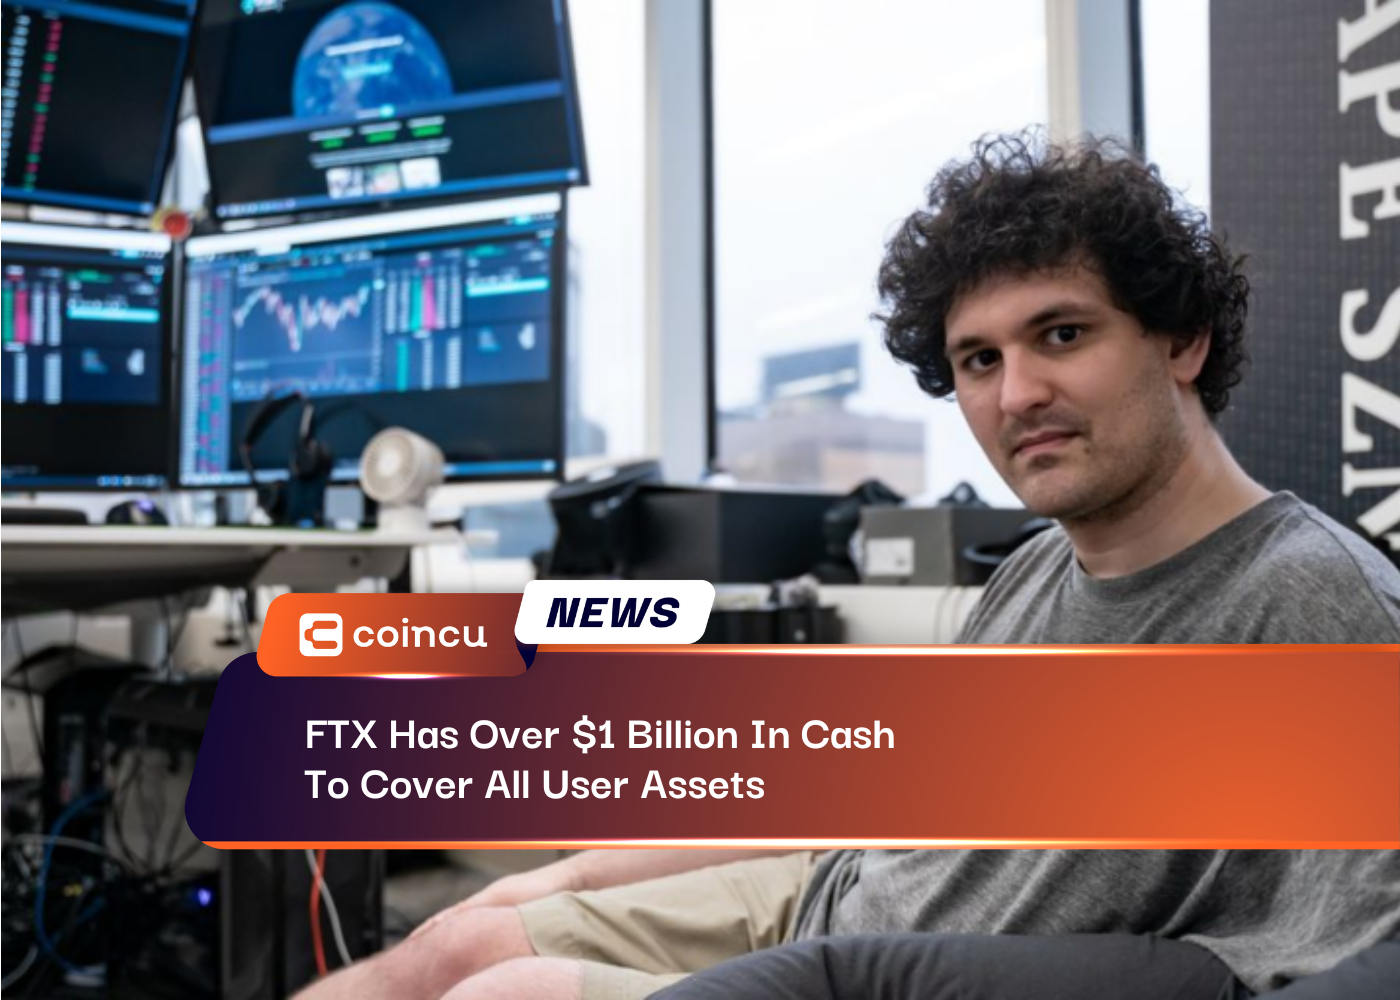 FTX dispose de plus d'un milliard de dollars en espèces pour couvrir tous les actifs des utilisateurs